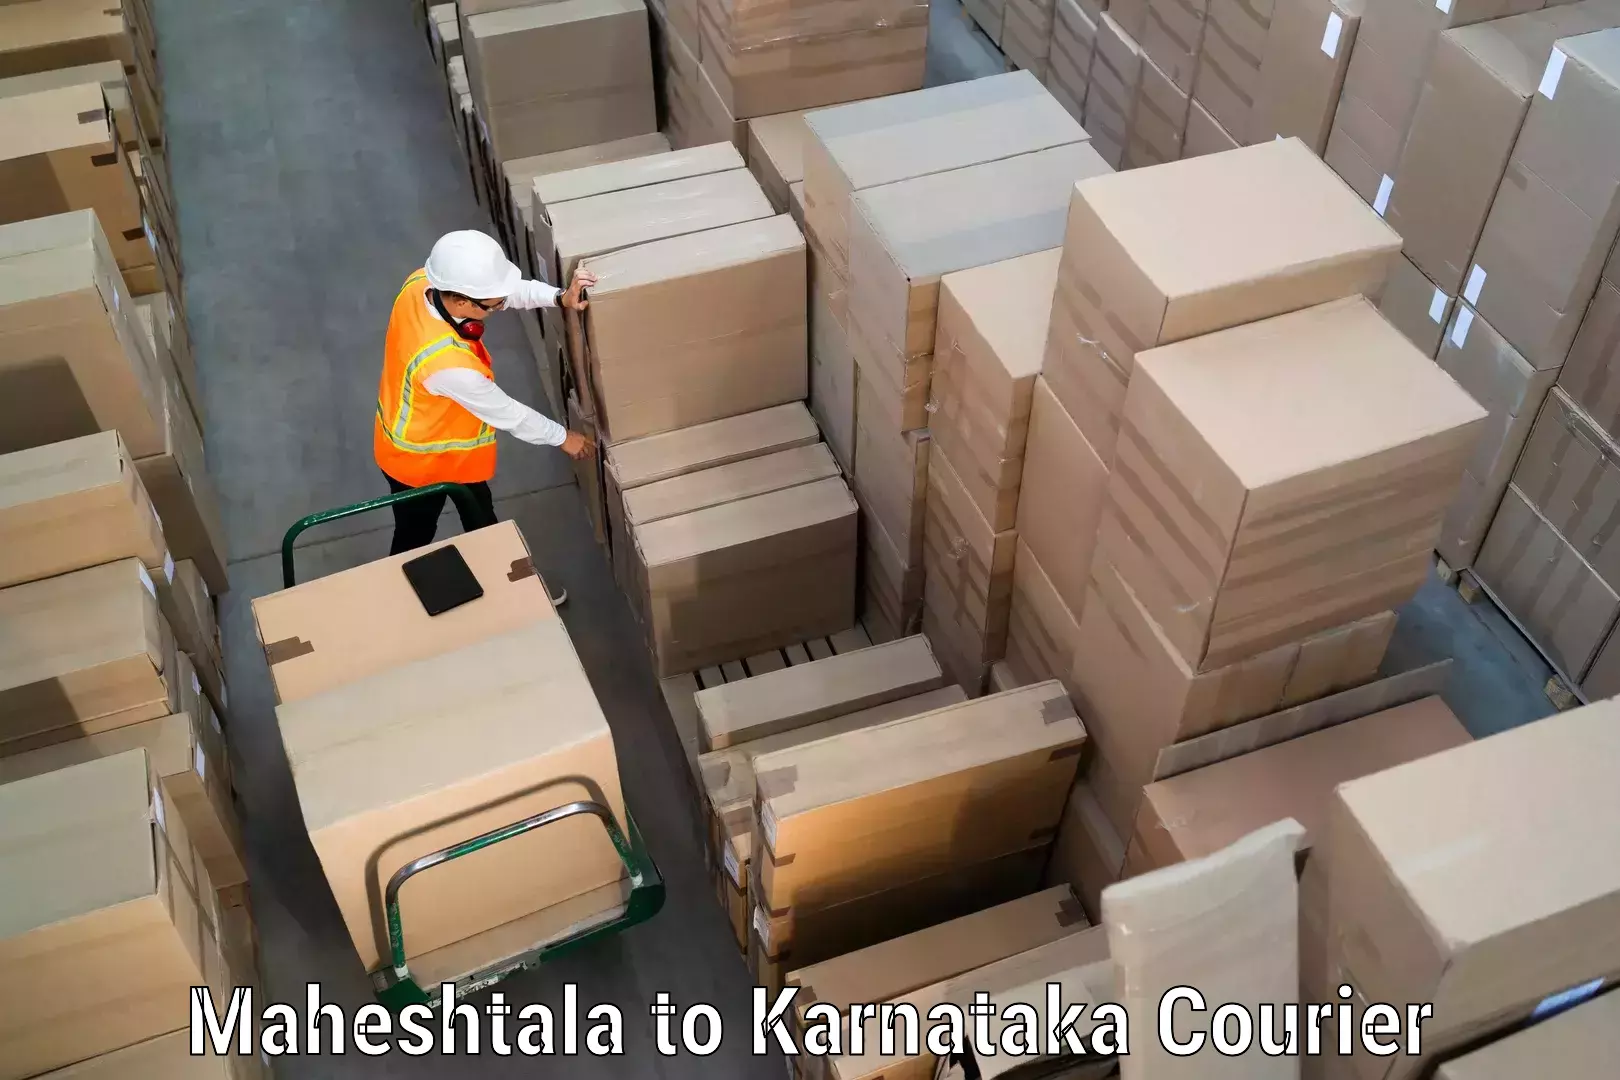 International courier rates in Maheshtala to Chikkamagalur